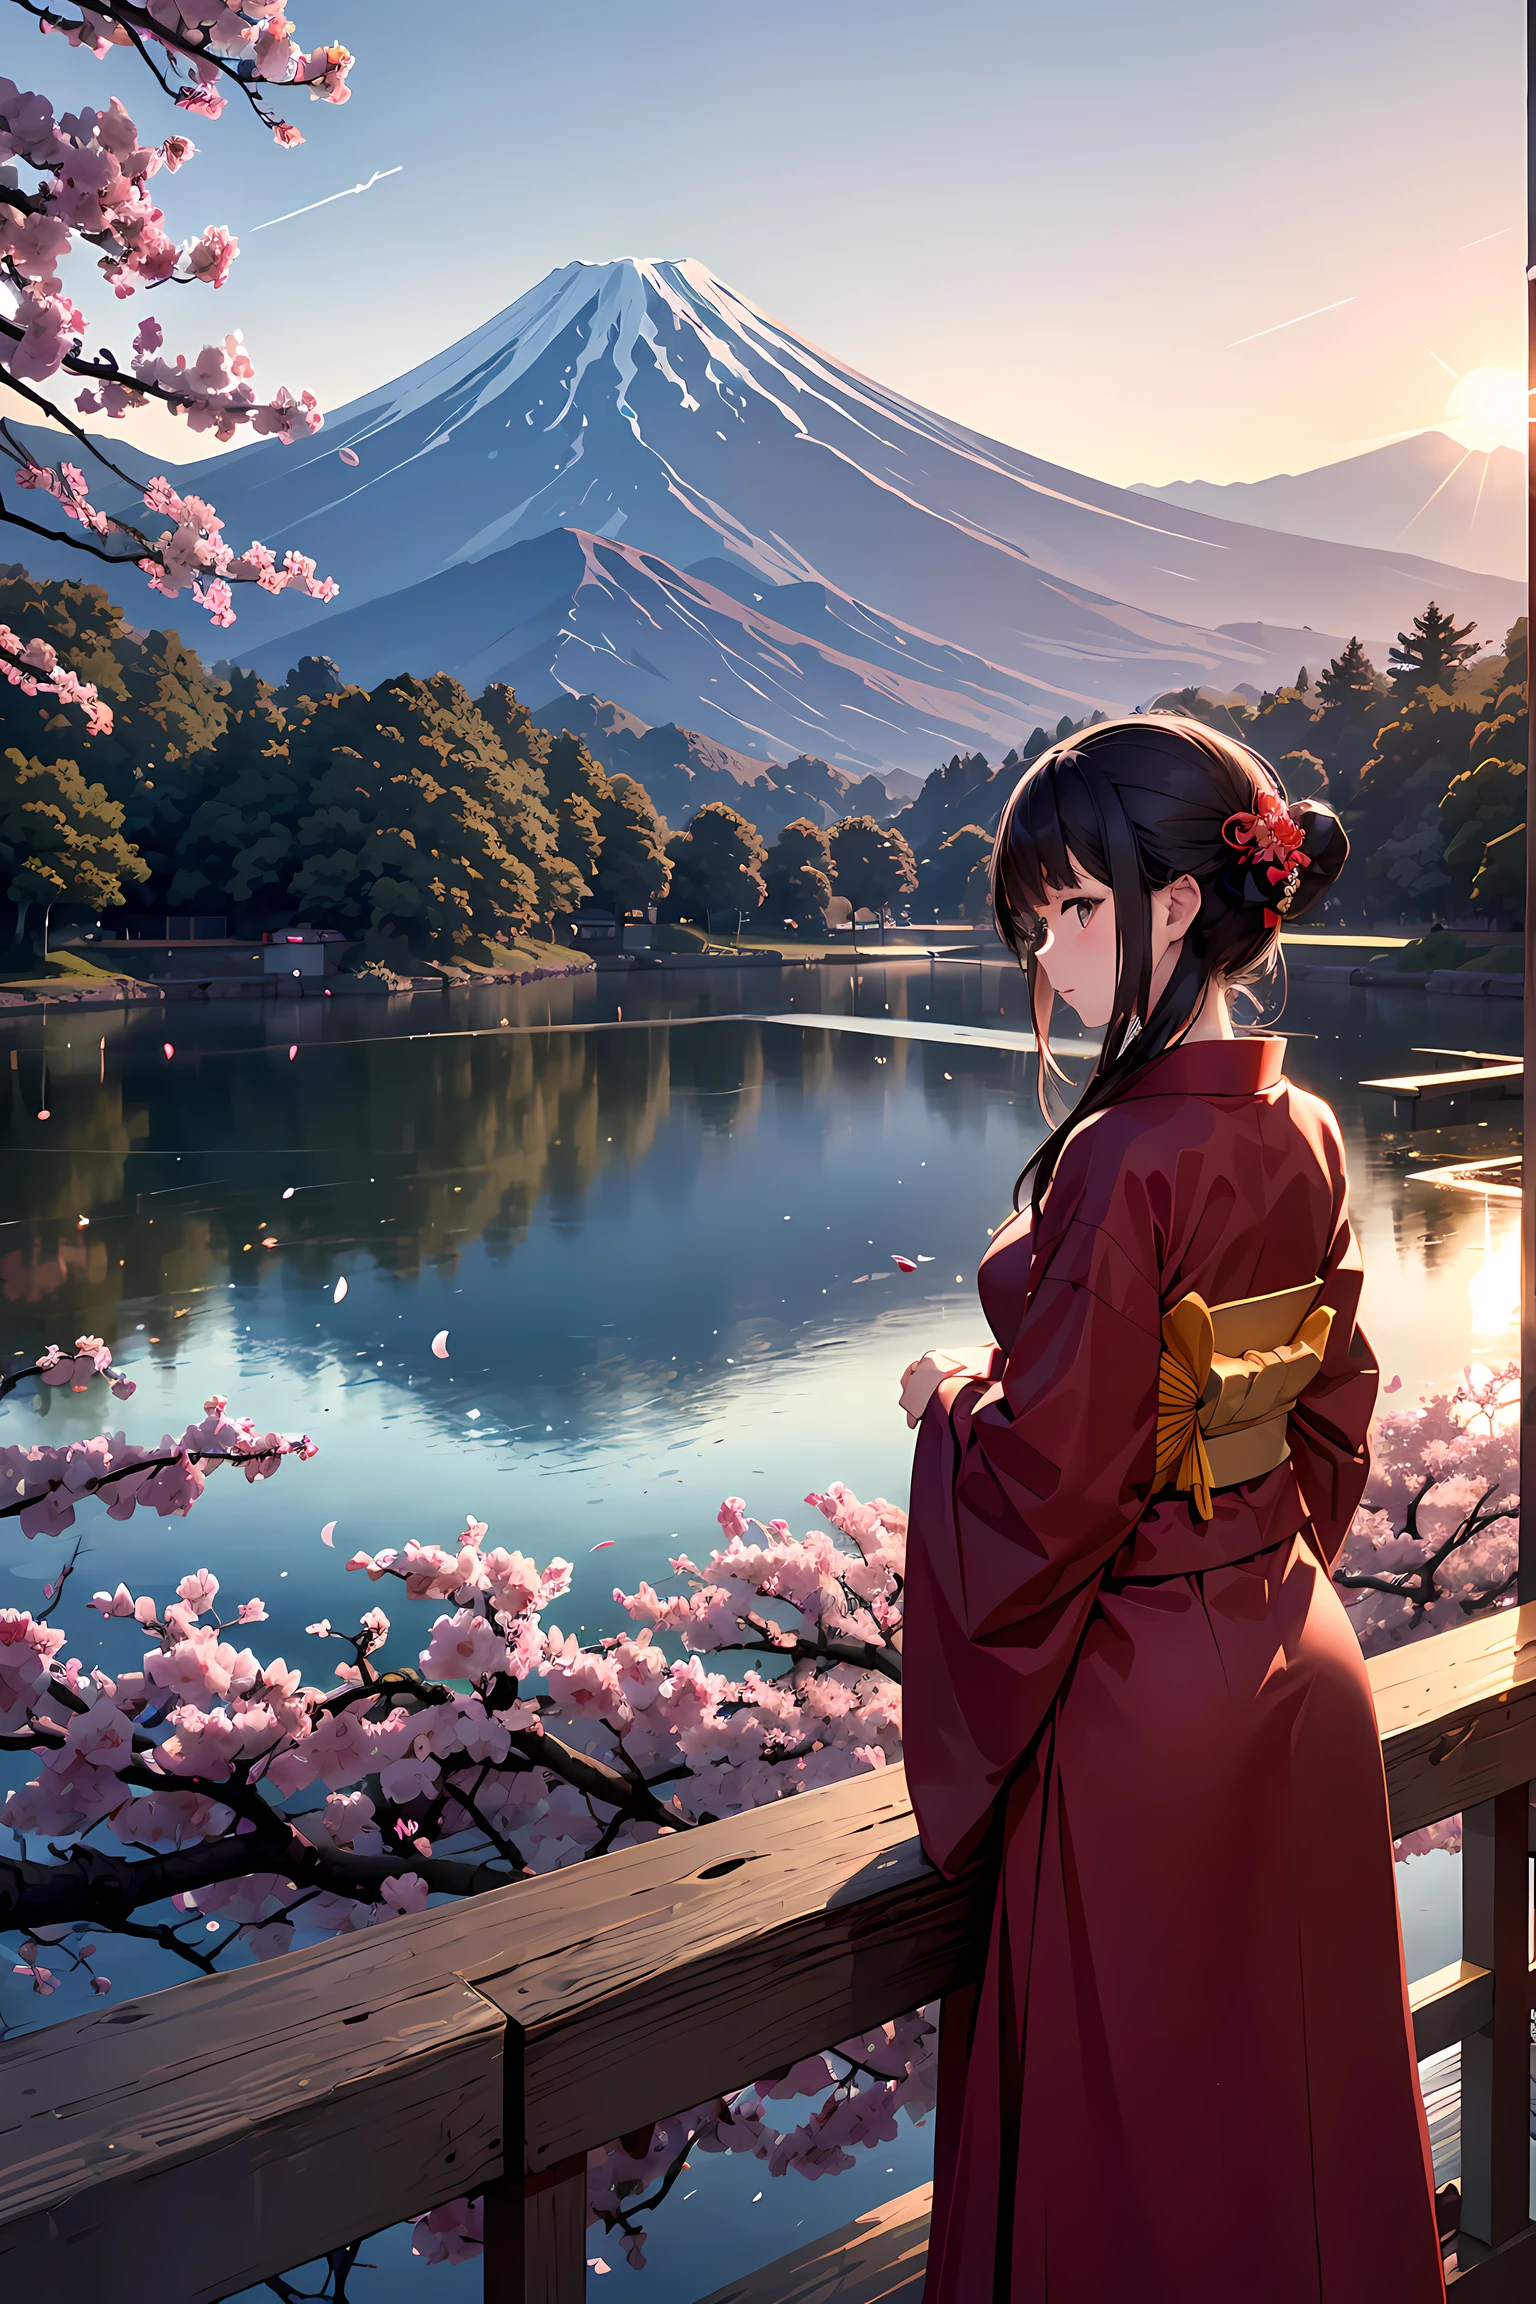 Arte recortada em papel, arte em papel colorido,  Uma linda mulher japonesa, por trás, retrato, quimono vermelho, Flor de cerejeira, lago, mt. Fuji, pôr do sol,